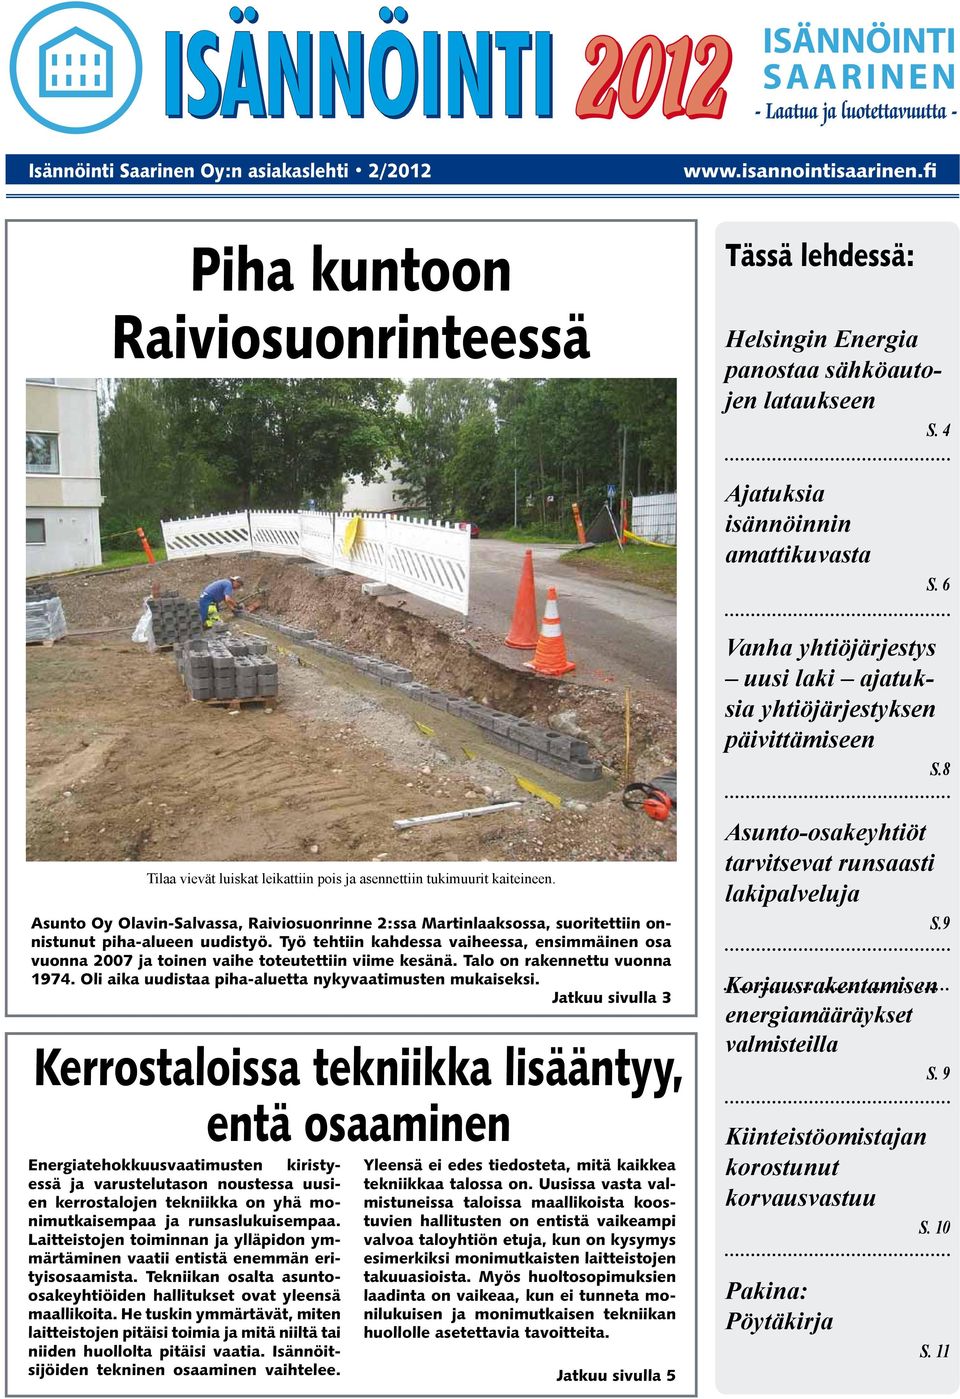 Asunto Oy Olavin-Salvassa, Raiviosuonrinne 2:ssa Martinlaaksossa, suoritettiin onnistunut piha-alueen uudistyö.